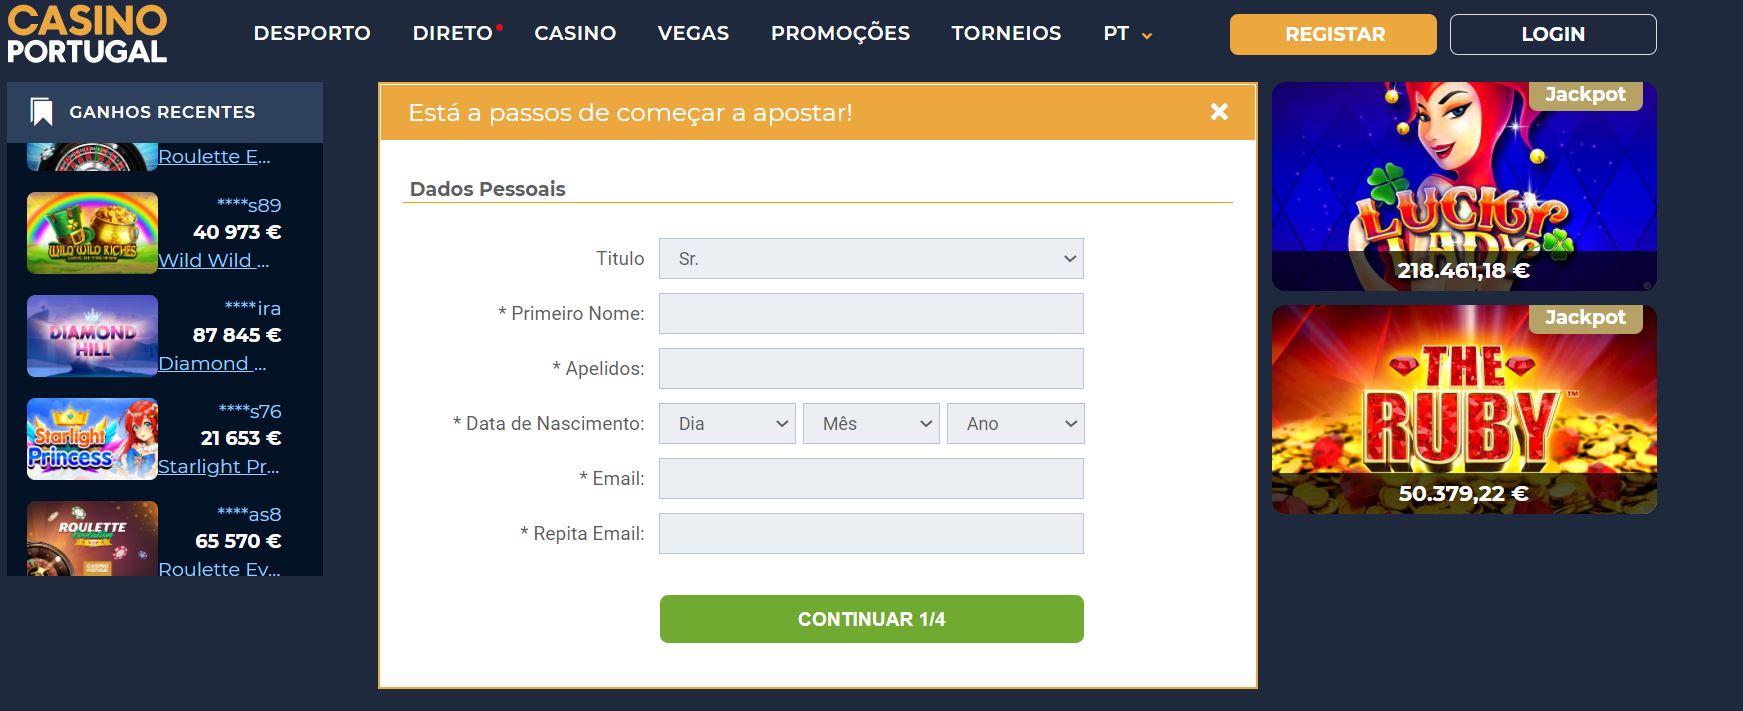 Código promocional Casino Portugal